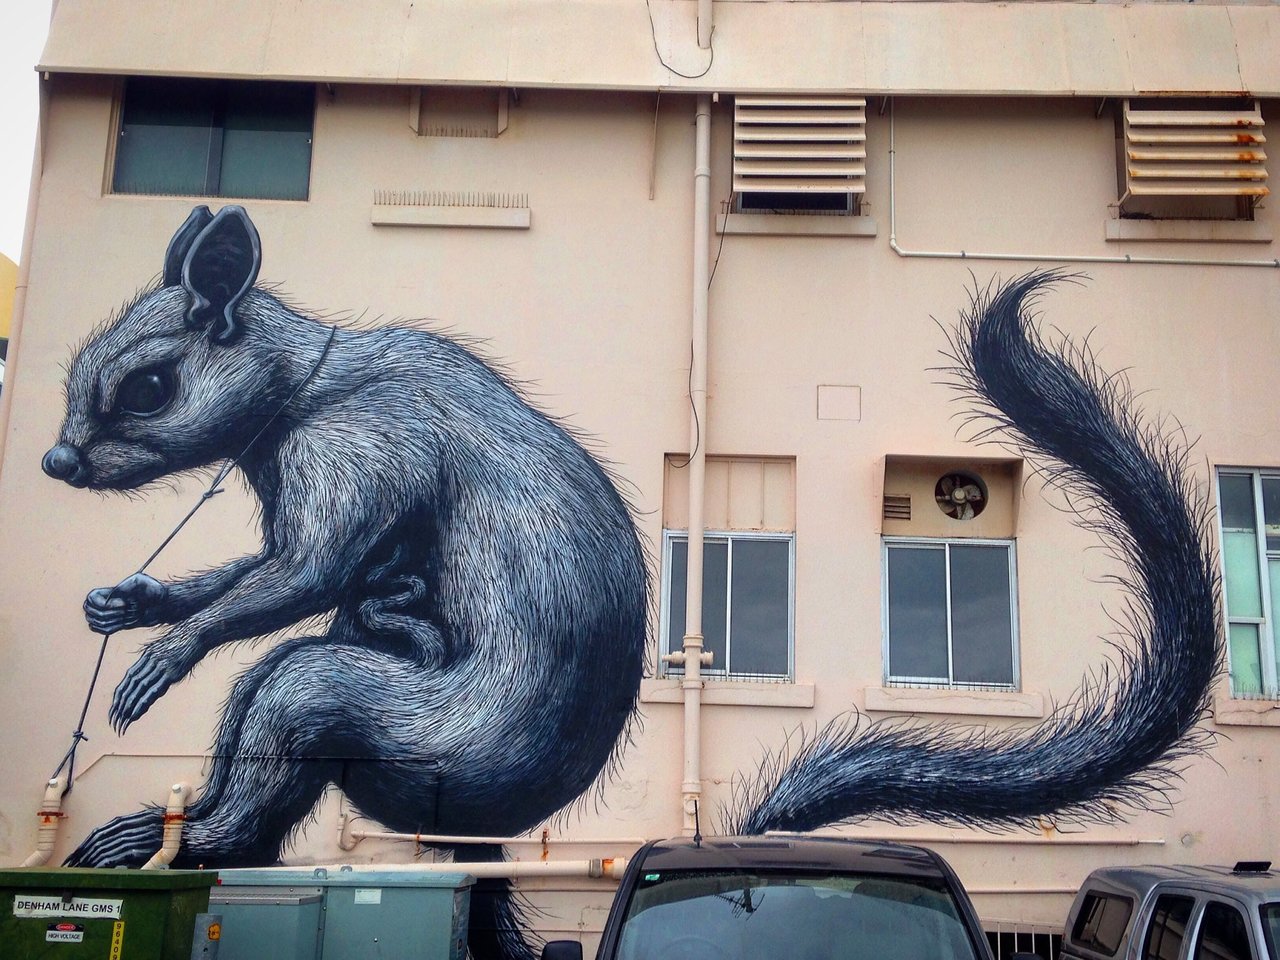 Mural by Roa, Townsville, Australia #Streetart #urbanart #graffiti #mural #art #Townsville #Australia https://t.co/jj5YPKwGcS